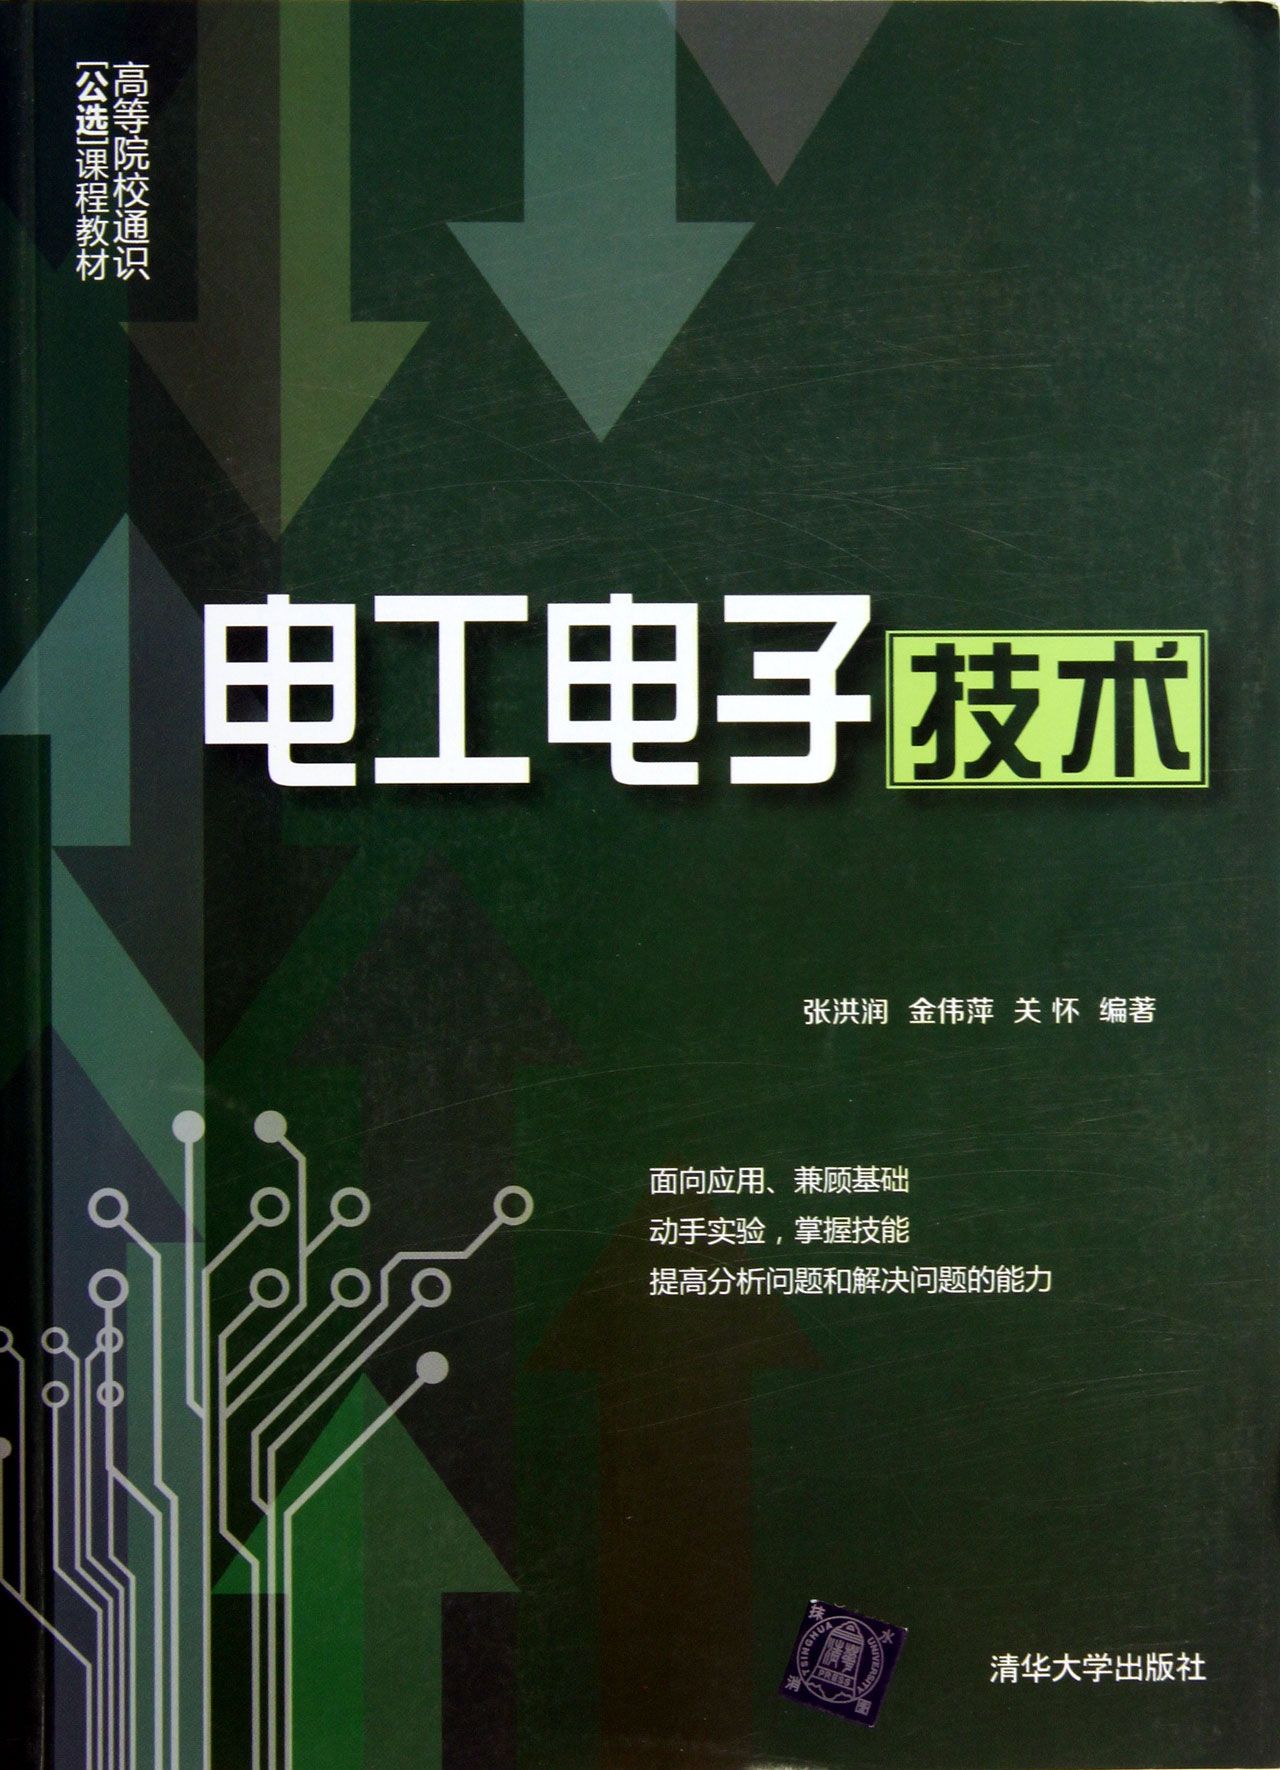 電工電子技術(張洪潤金偉萍關懷 2013年版圖書)